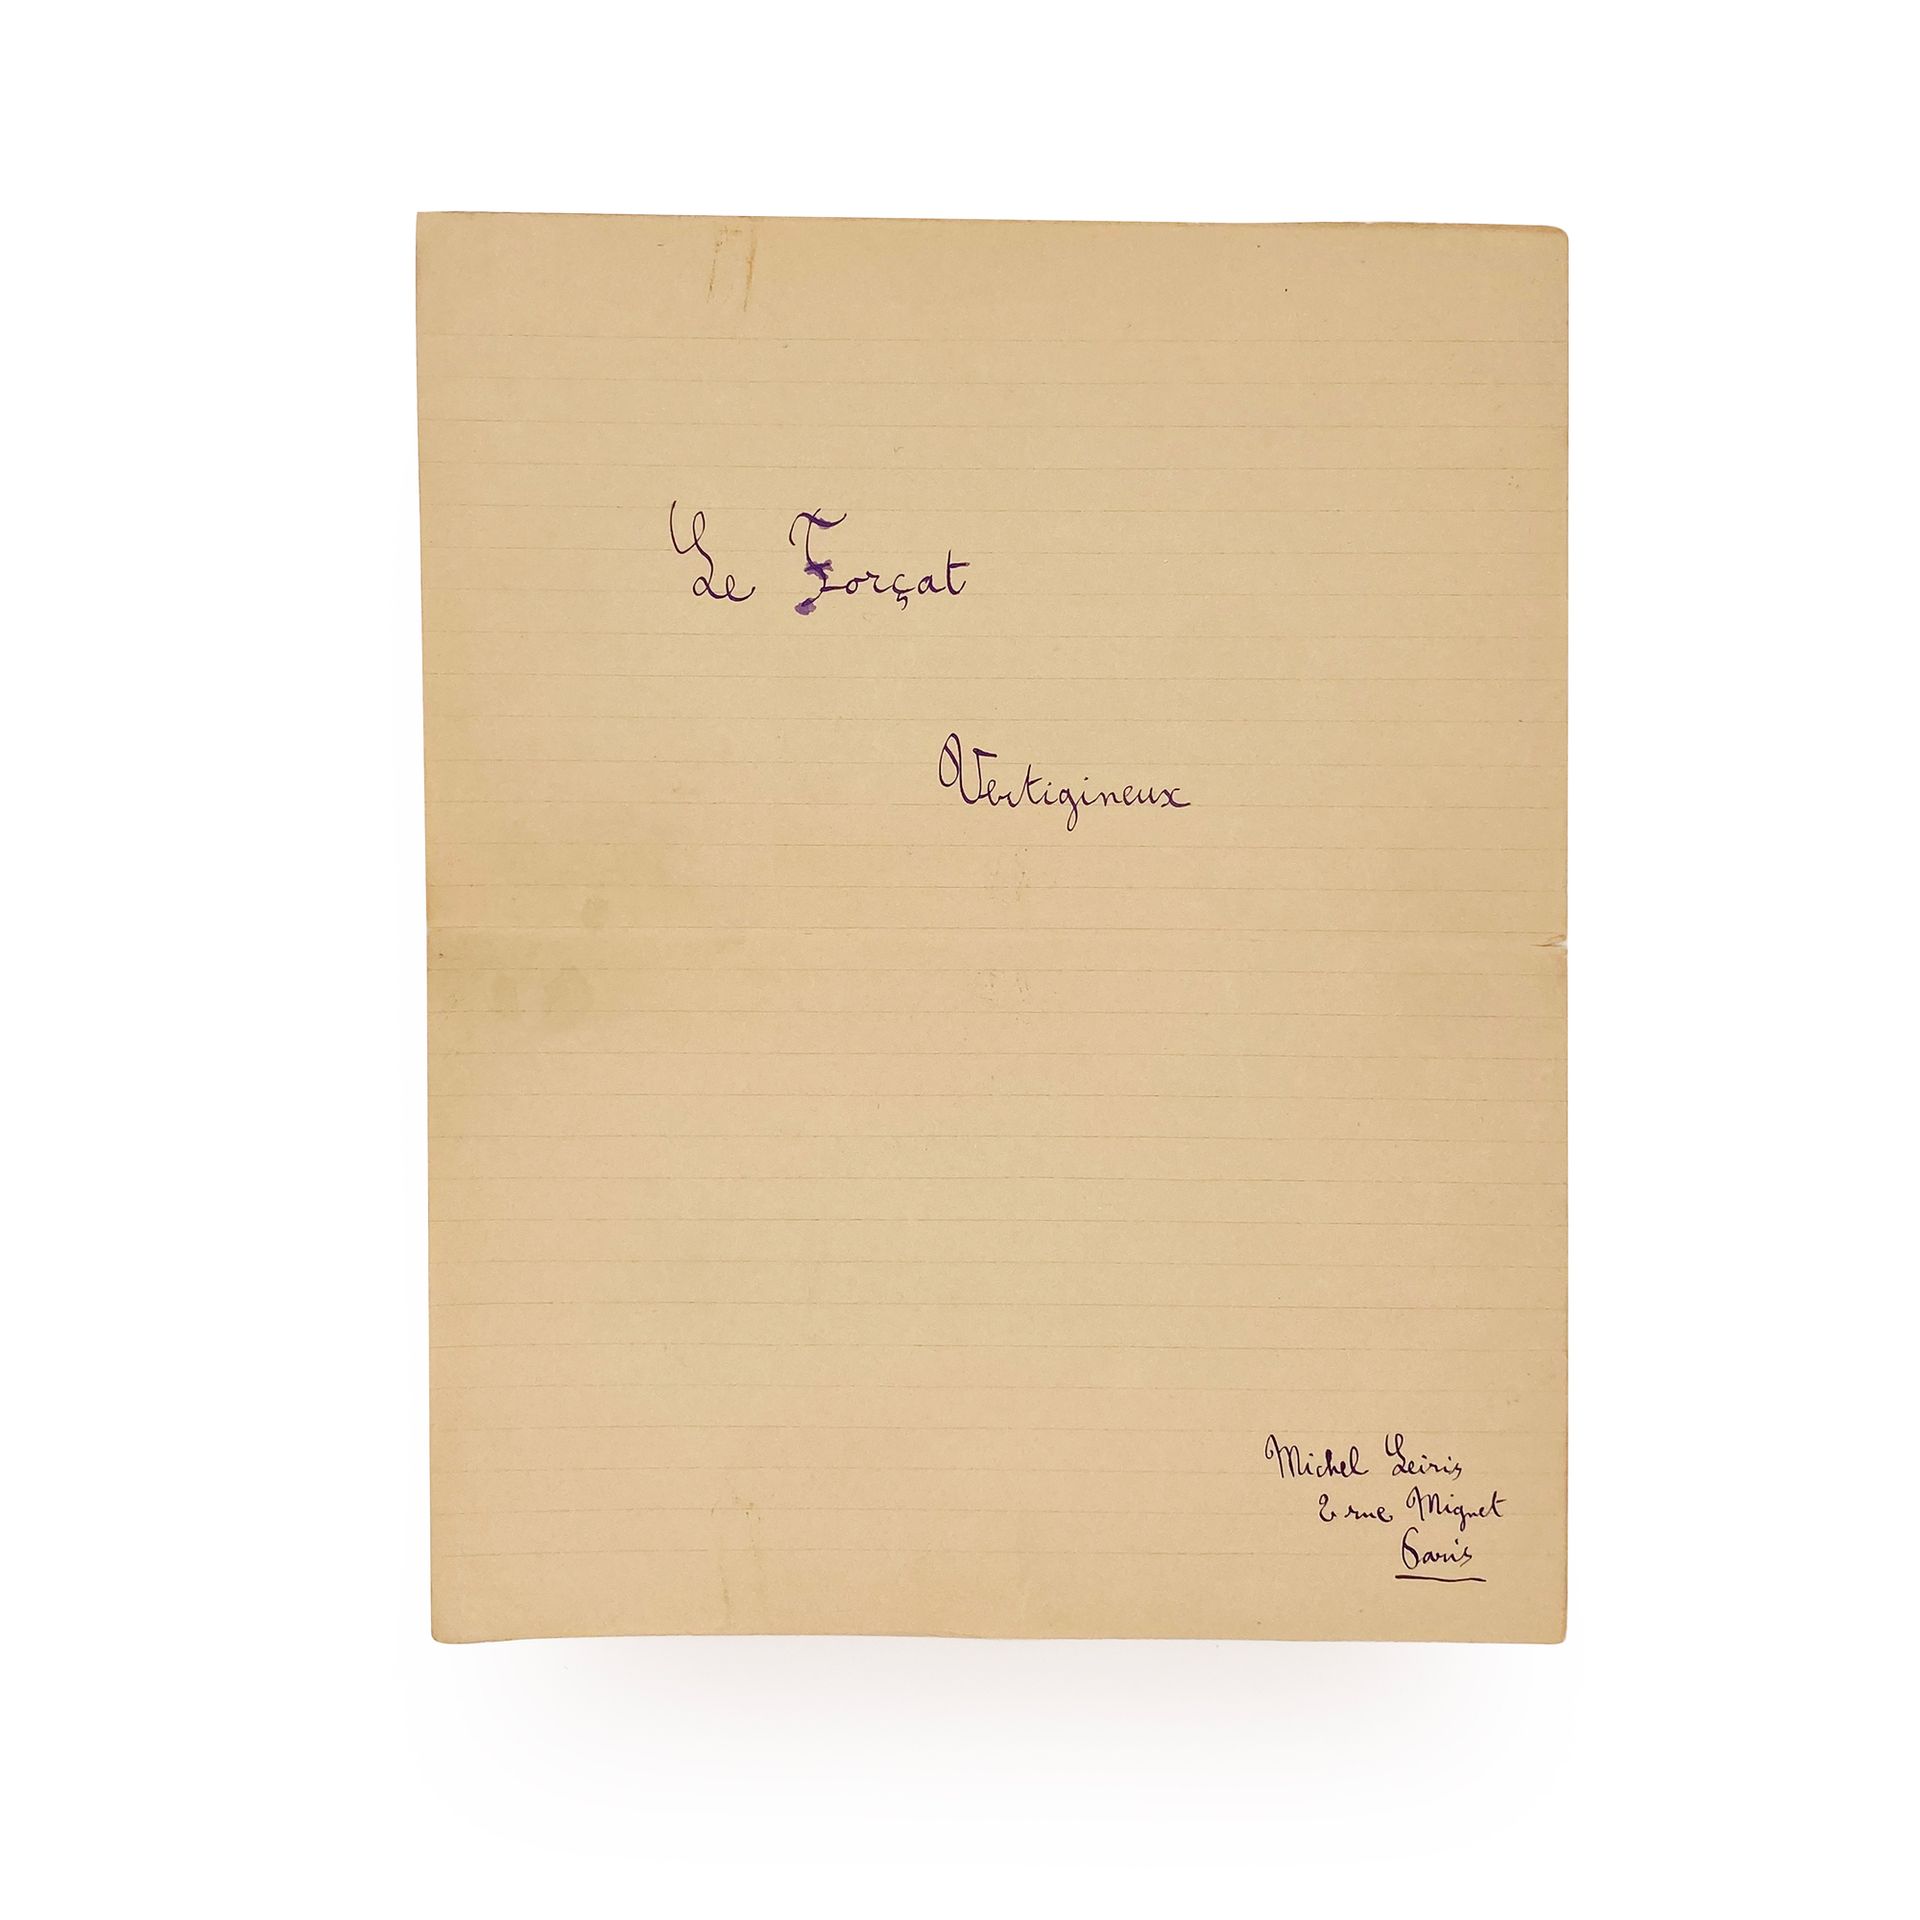 LEIRIS (Michel Le Forçat vertigineux. 26 novembre 1925.

Manuscrit autographe de&hellip;